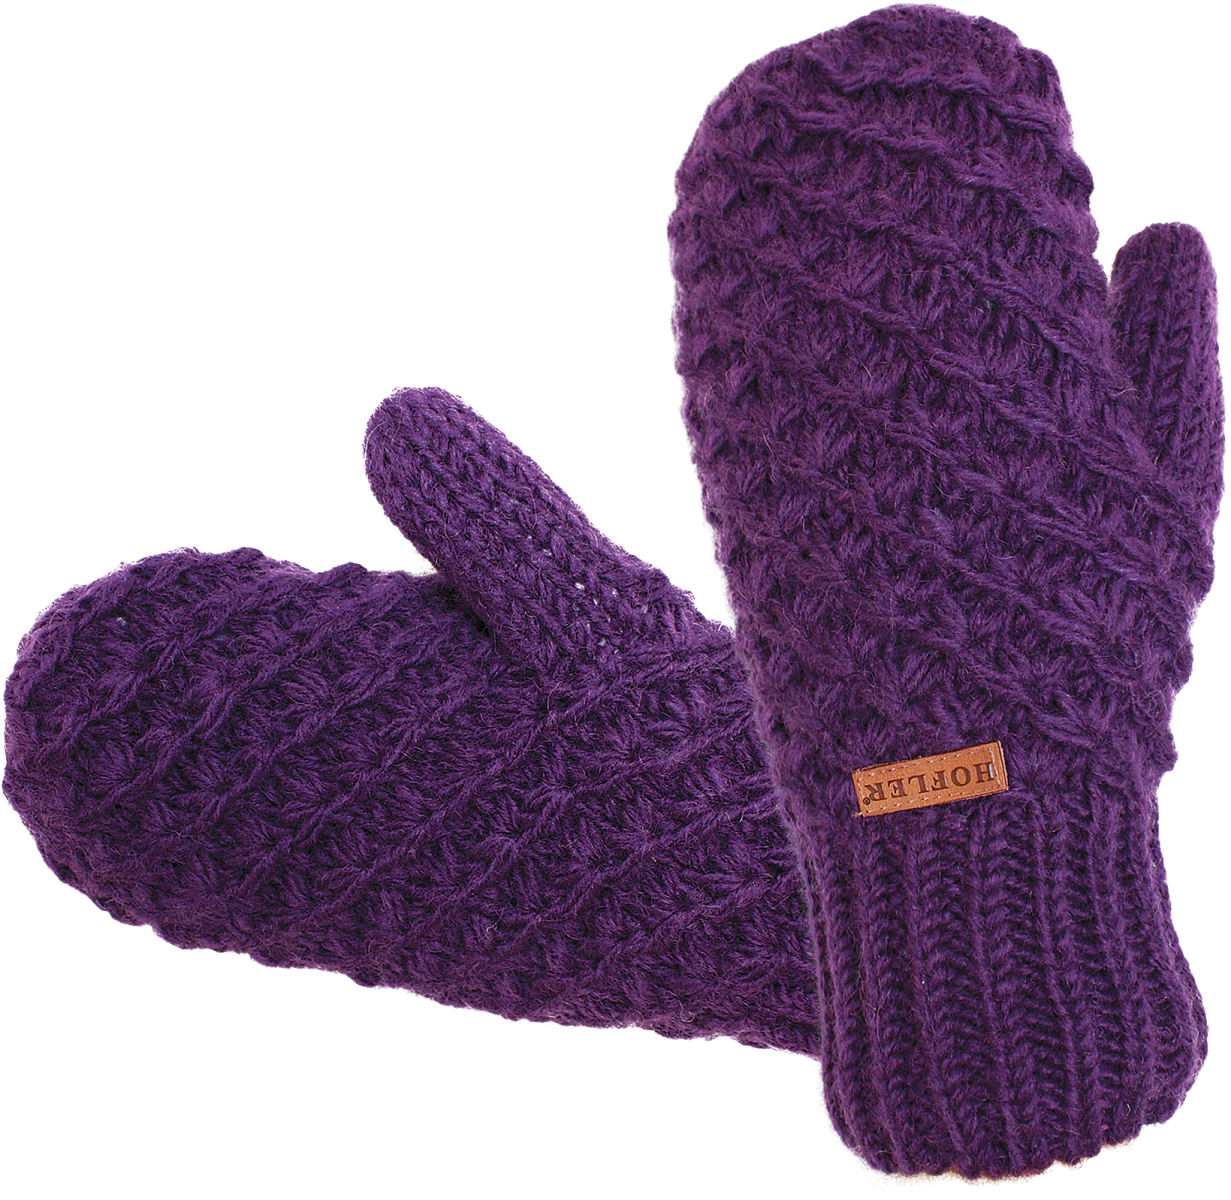 mitten clipart woolen glove